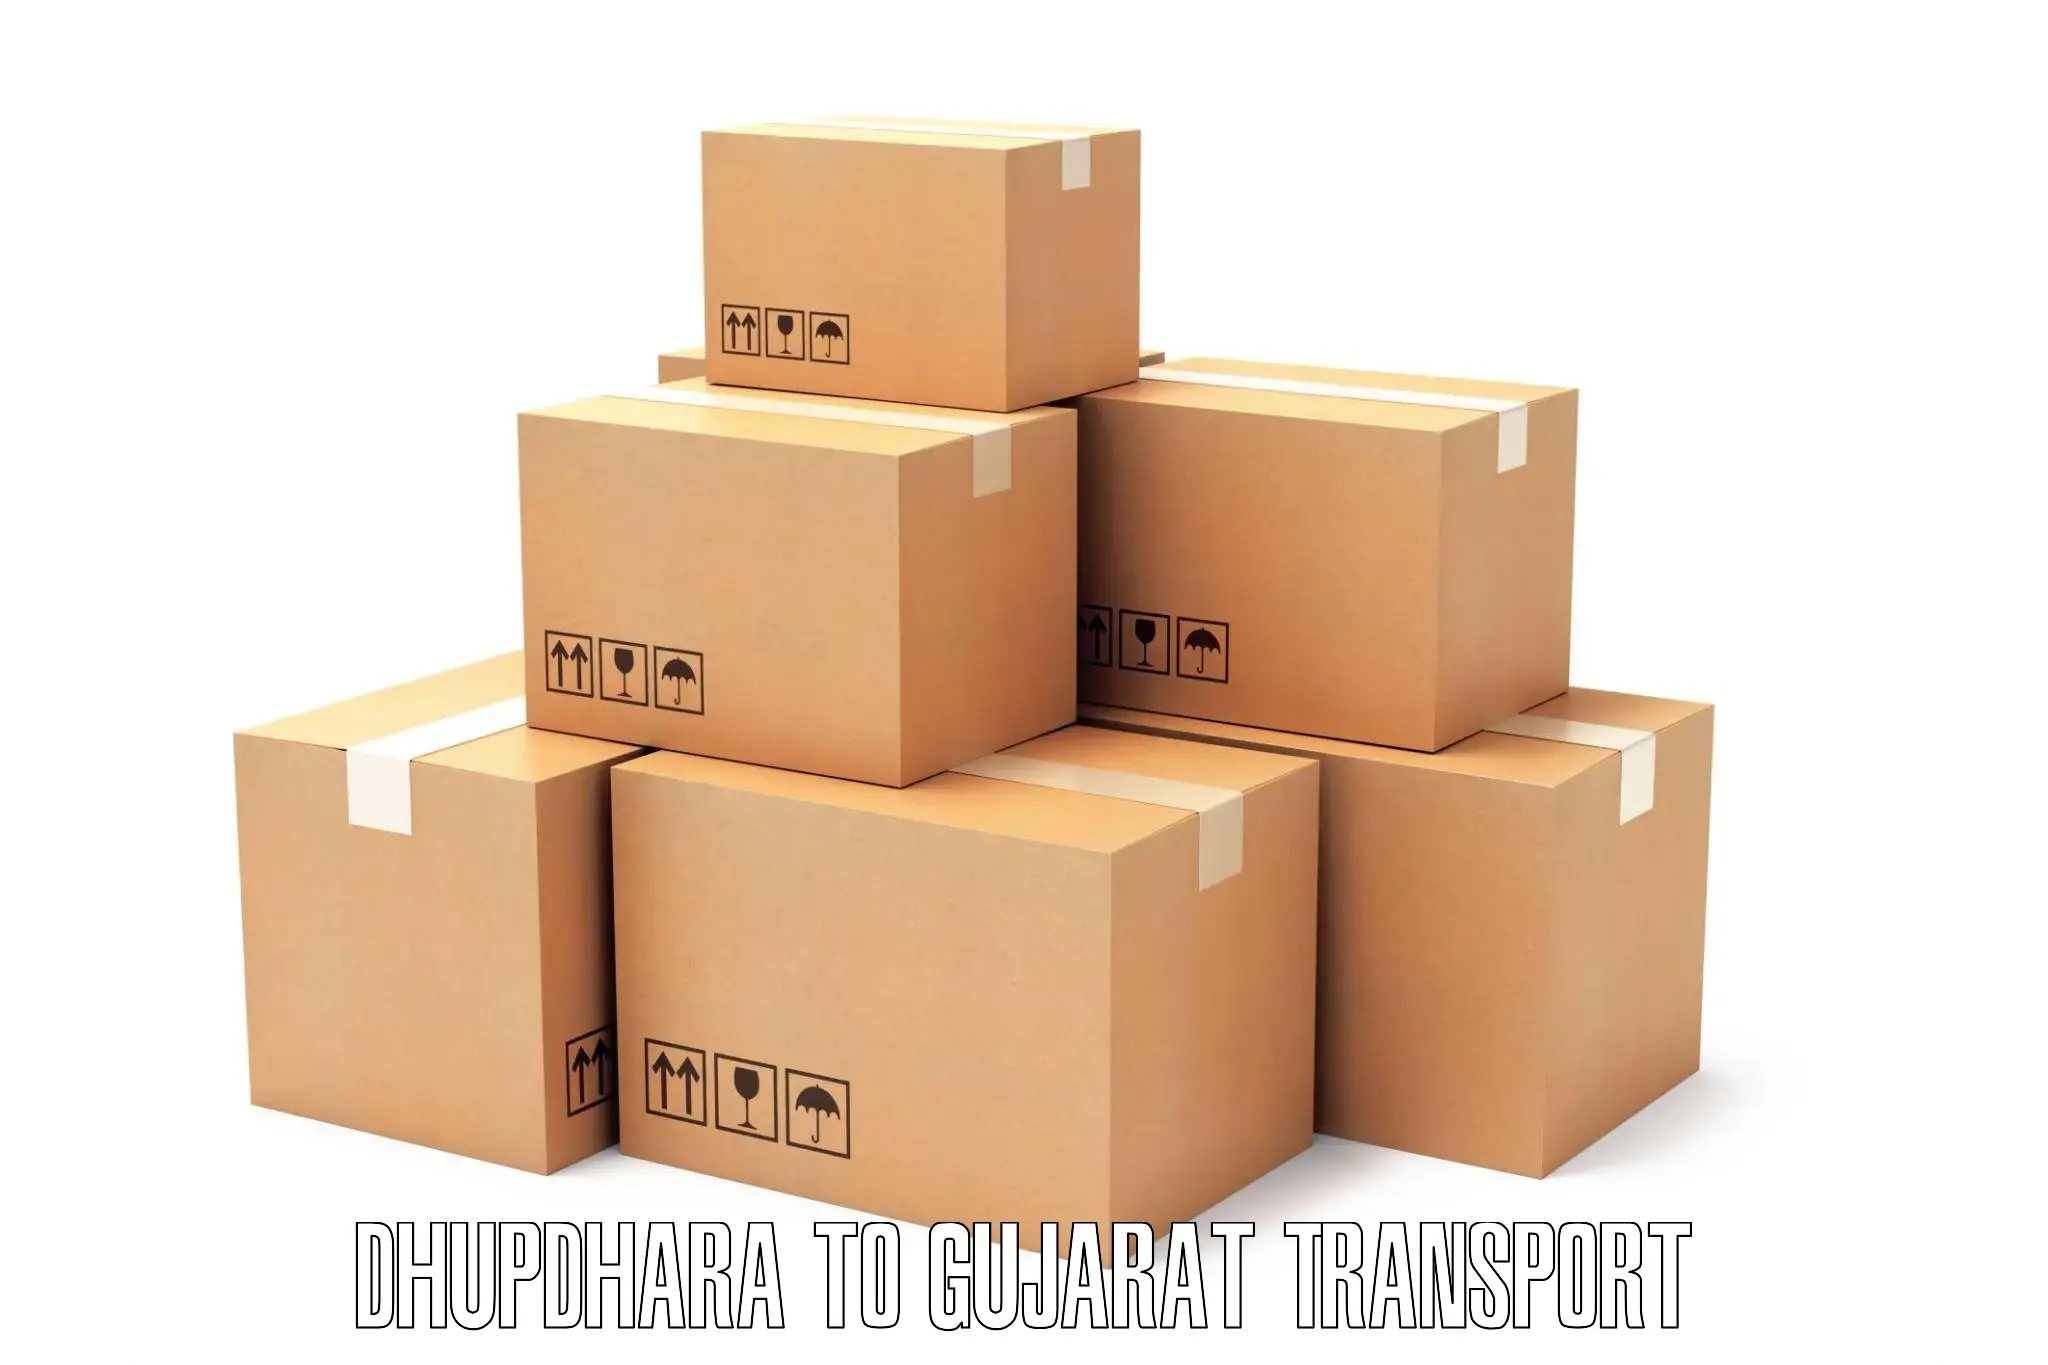 Container transport service Dhupdhara to IIT Gandhi Nagar